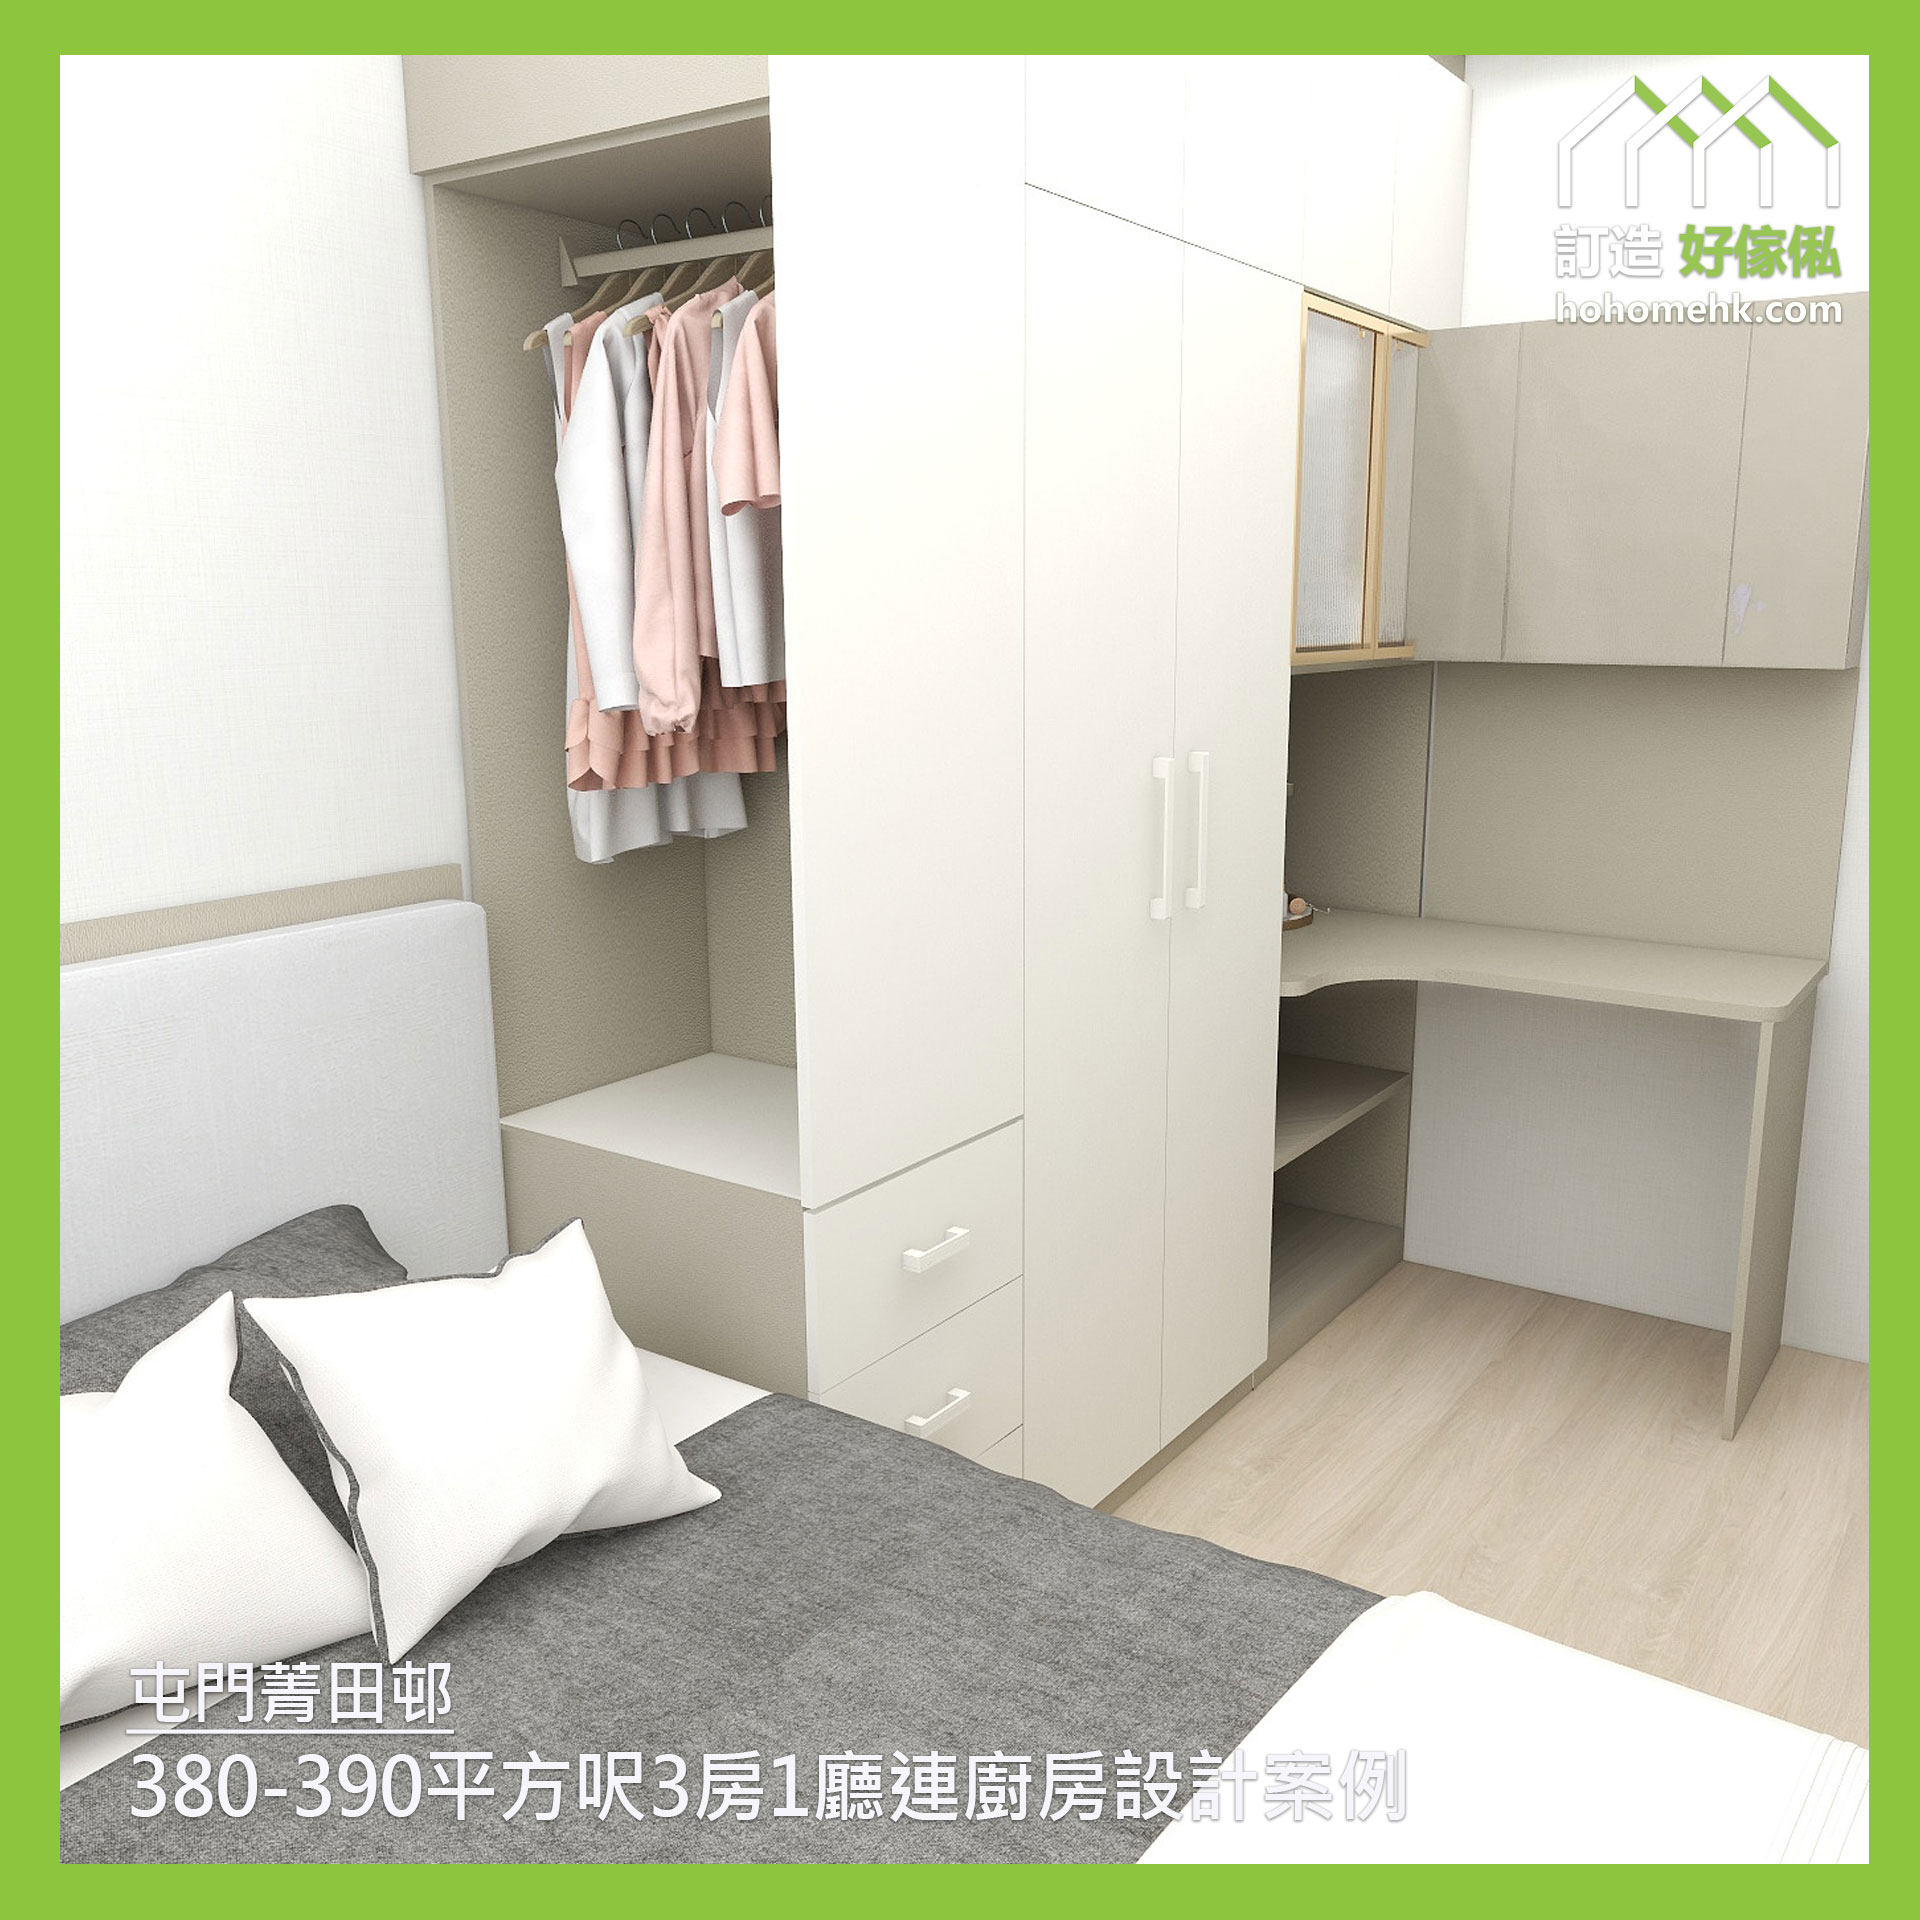 菁田邨 Ching Tin Estate 380-390呎3房1廳連廚房設計案例